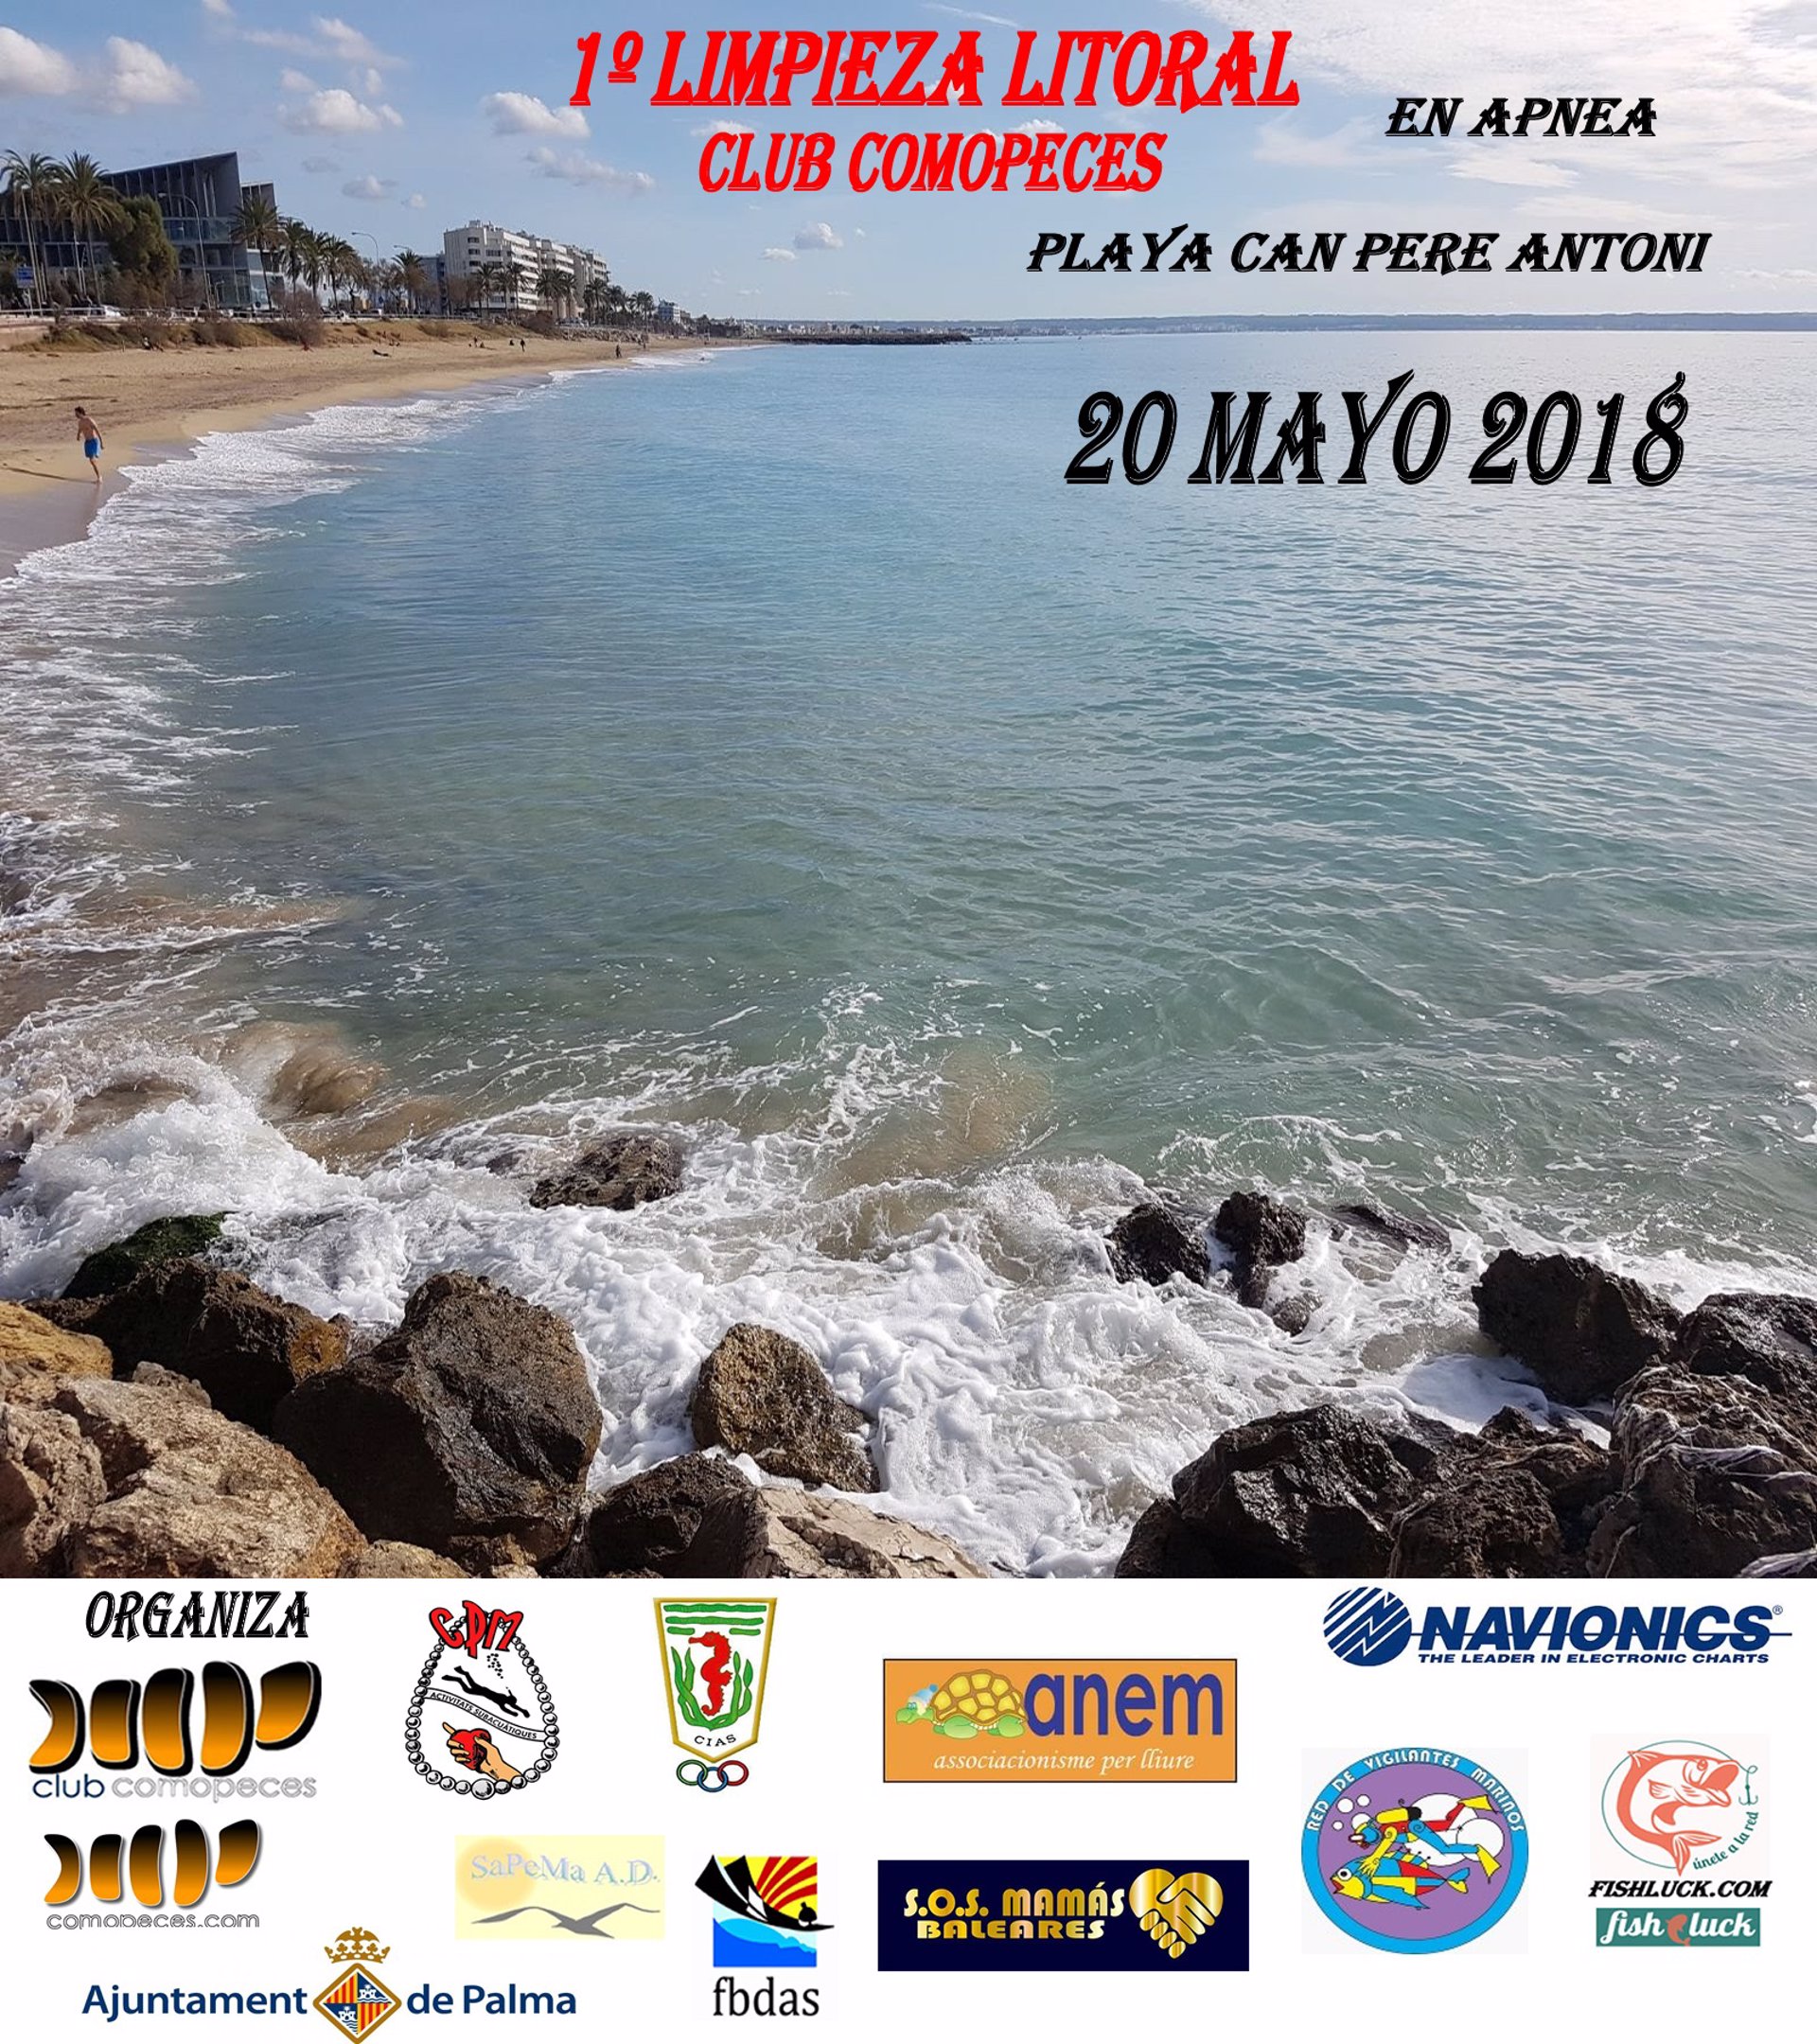 Buceadores en apnea realizarán este domingo una limpieza del fondo marino en la Playa de Can Pere Antoni